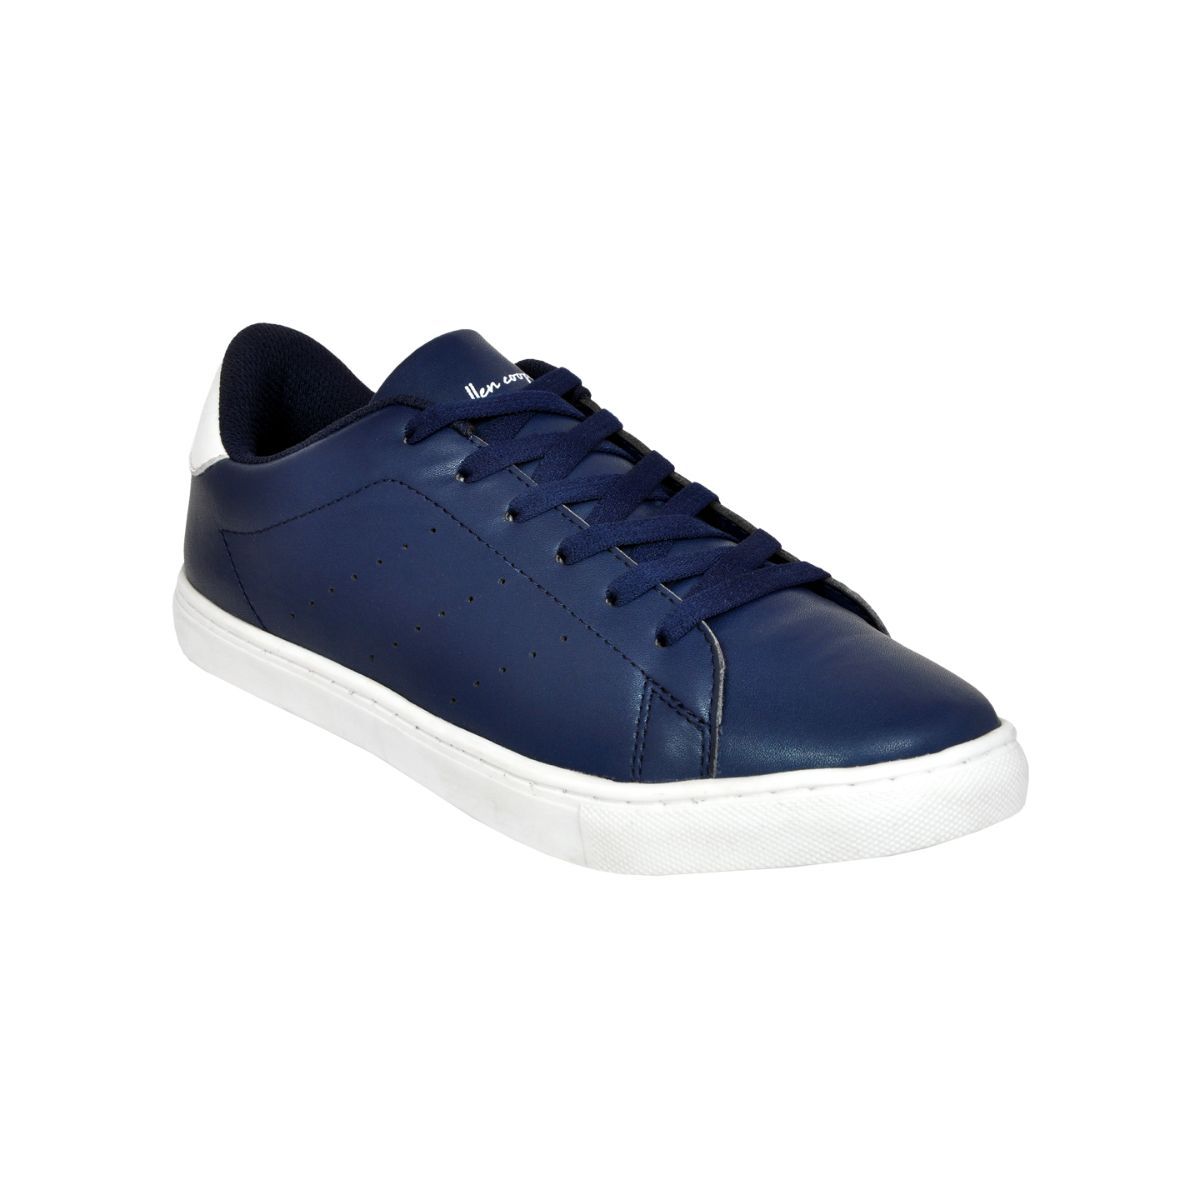 Allen Cooper Navy Blue Sneakers For Men - 7